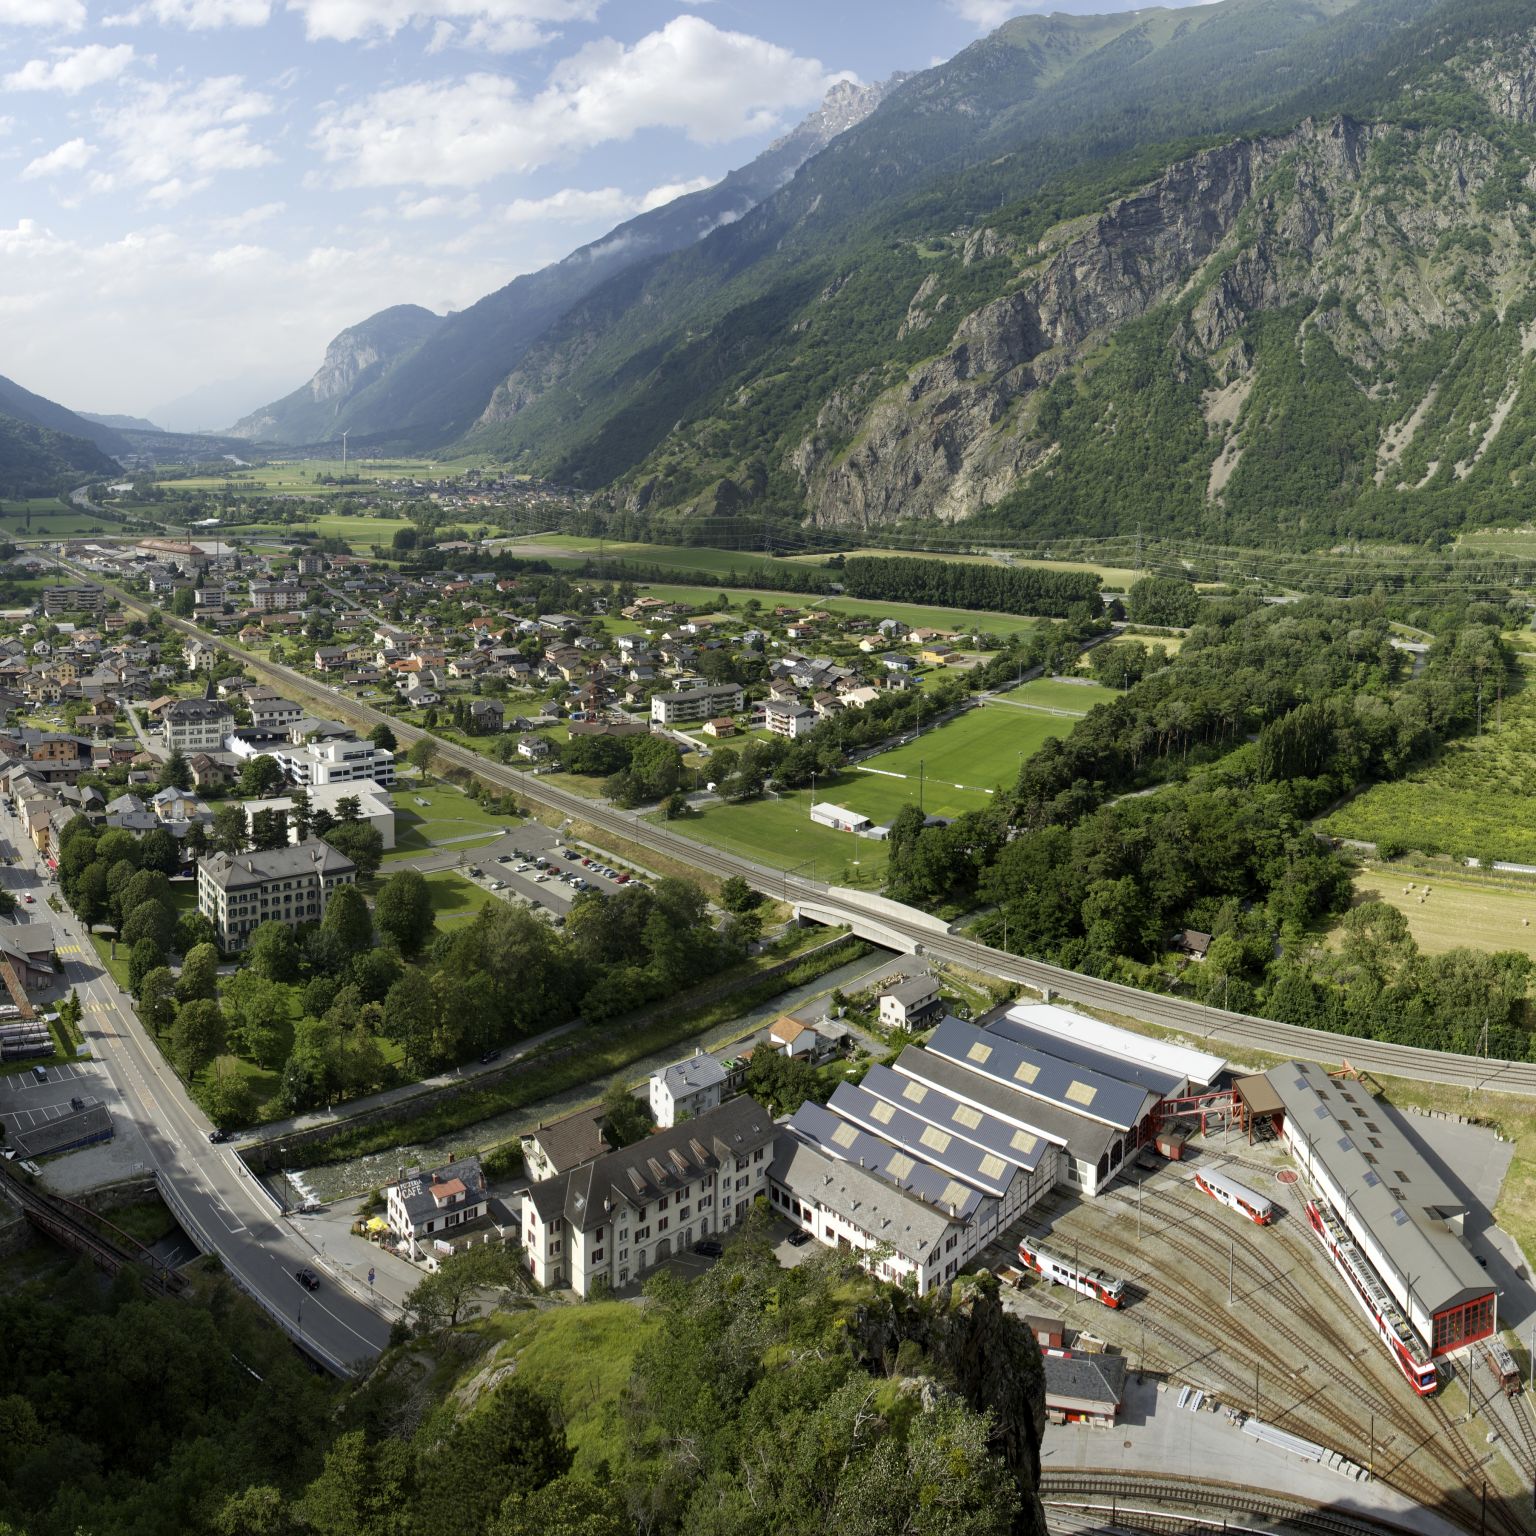 Das Dorf Vernayaz von oben gesehen mit der Cascade de la Pissevache sichtbar. Wallis, Schweiz